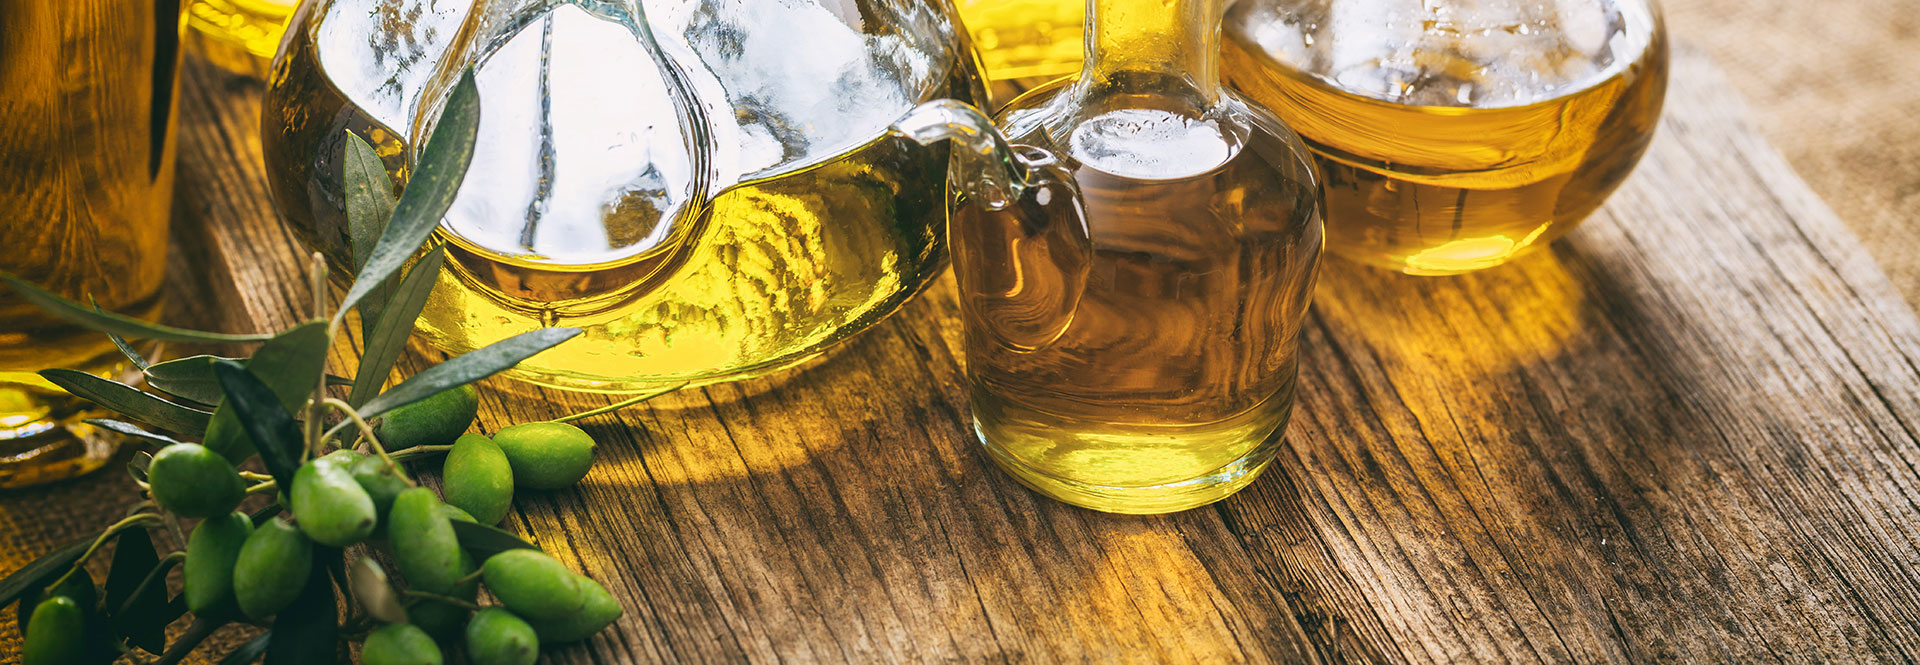 Gläser mit Olivenöl auf einem Tisch